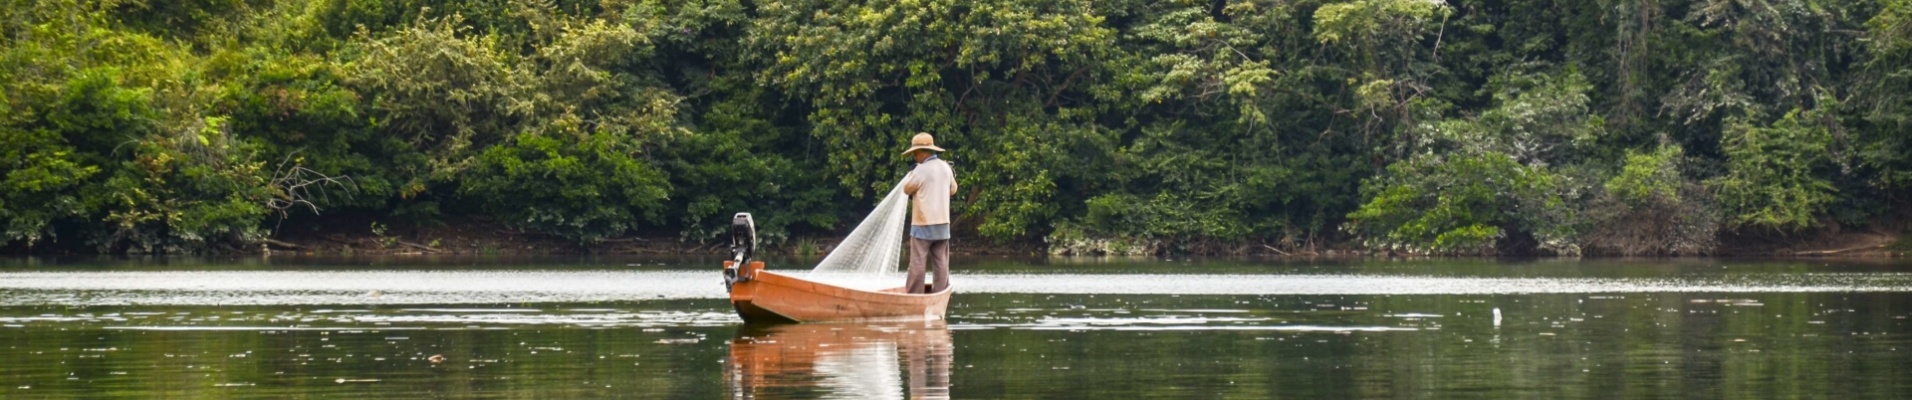 pêcheur-piogue-nature-colombie